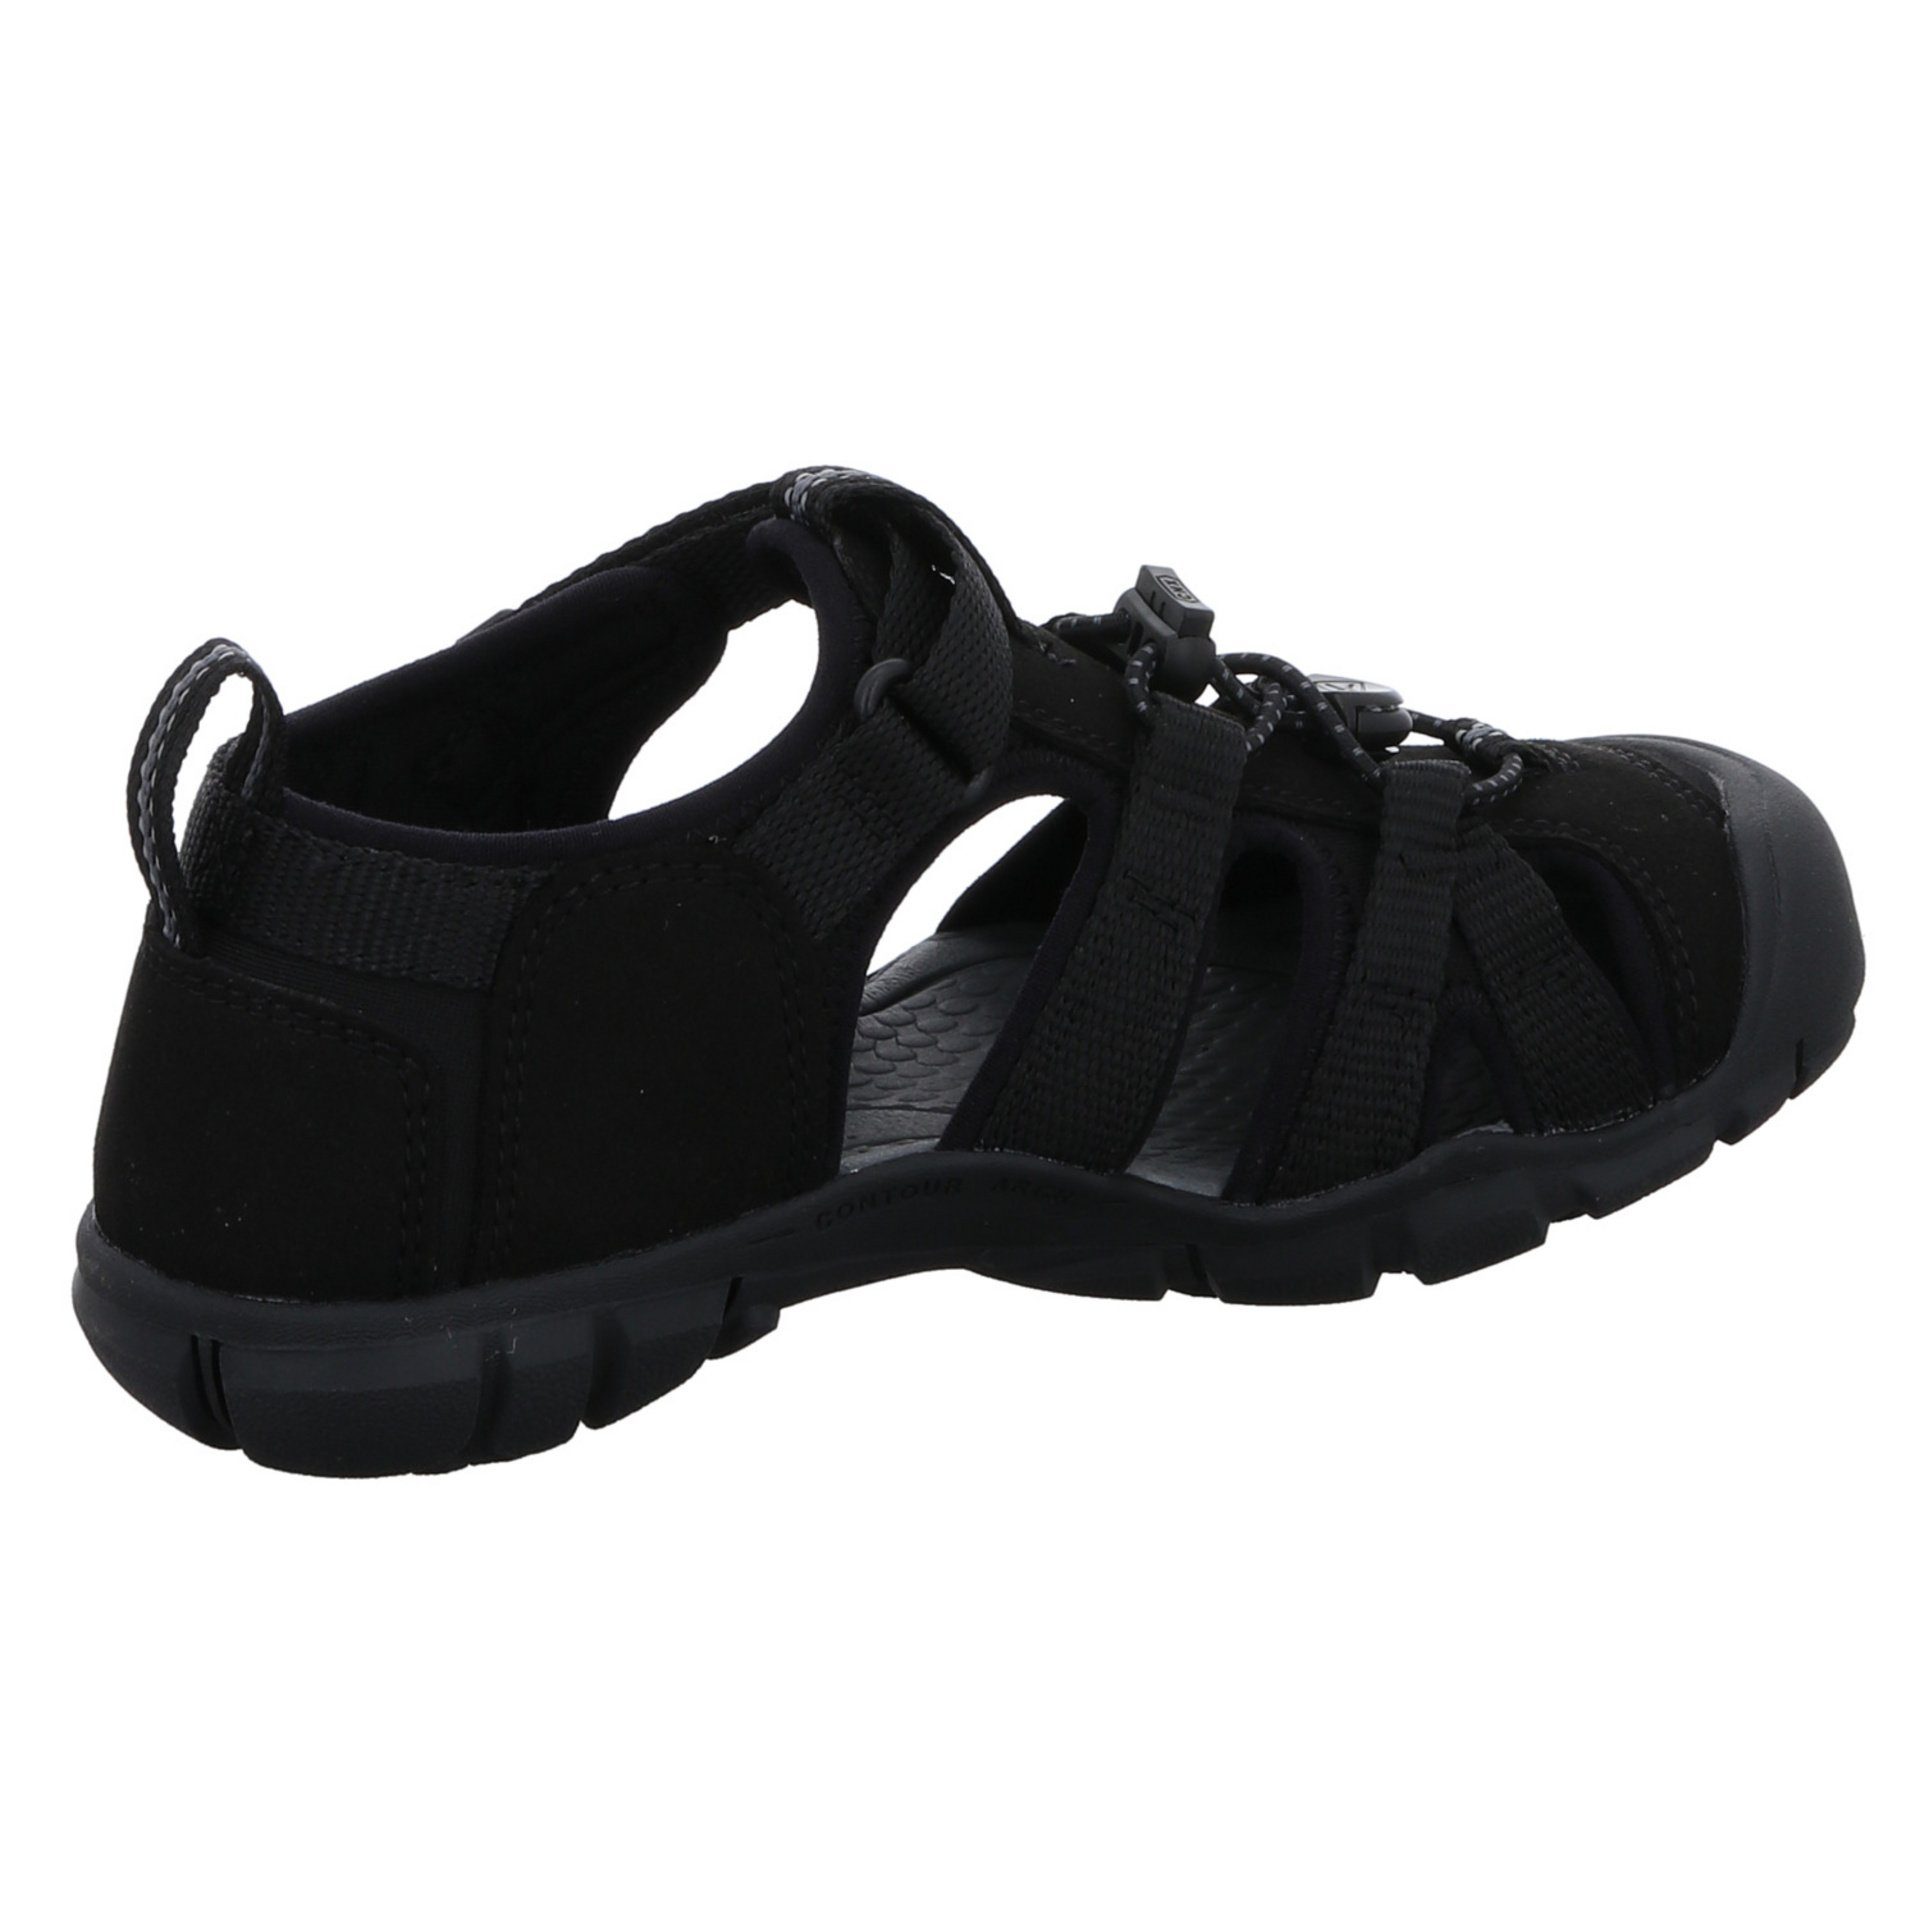 schwarz Textil Sandalen Schuhe dunkel Jungen Keen Sandale